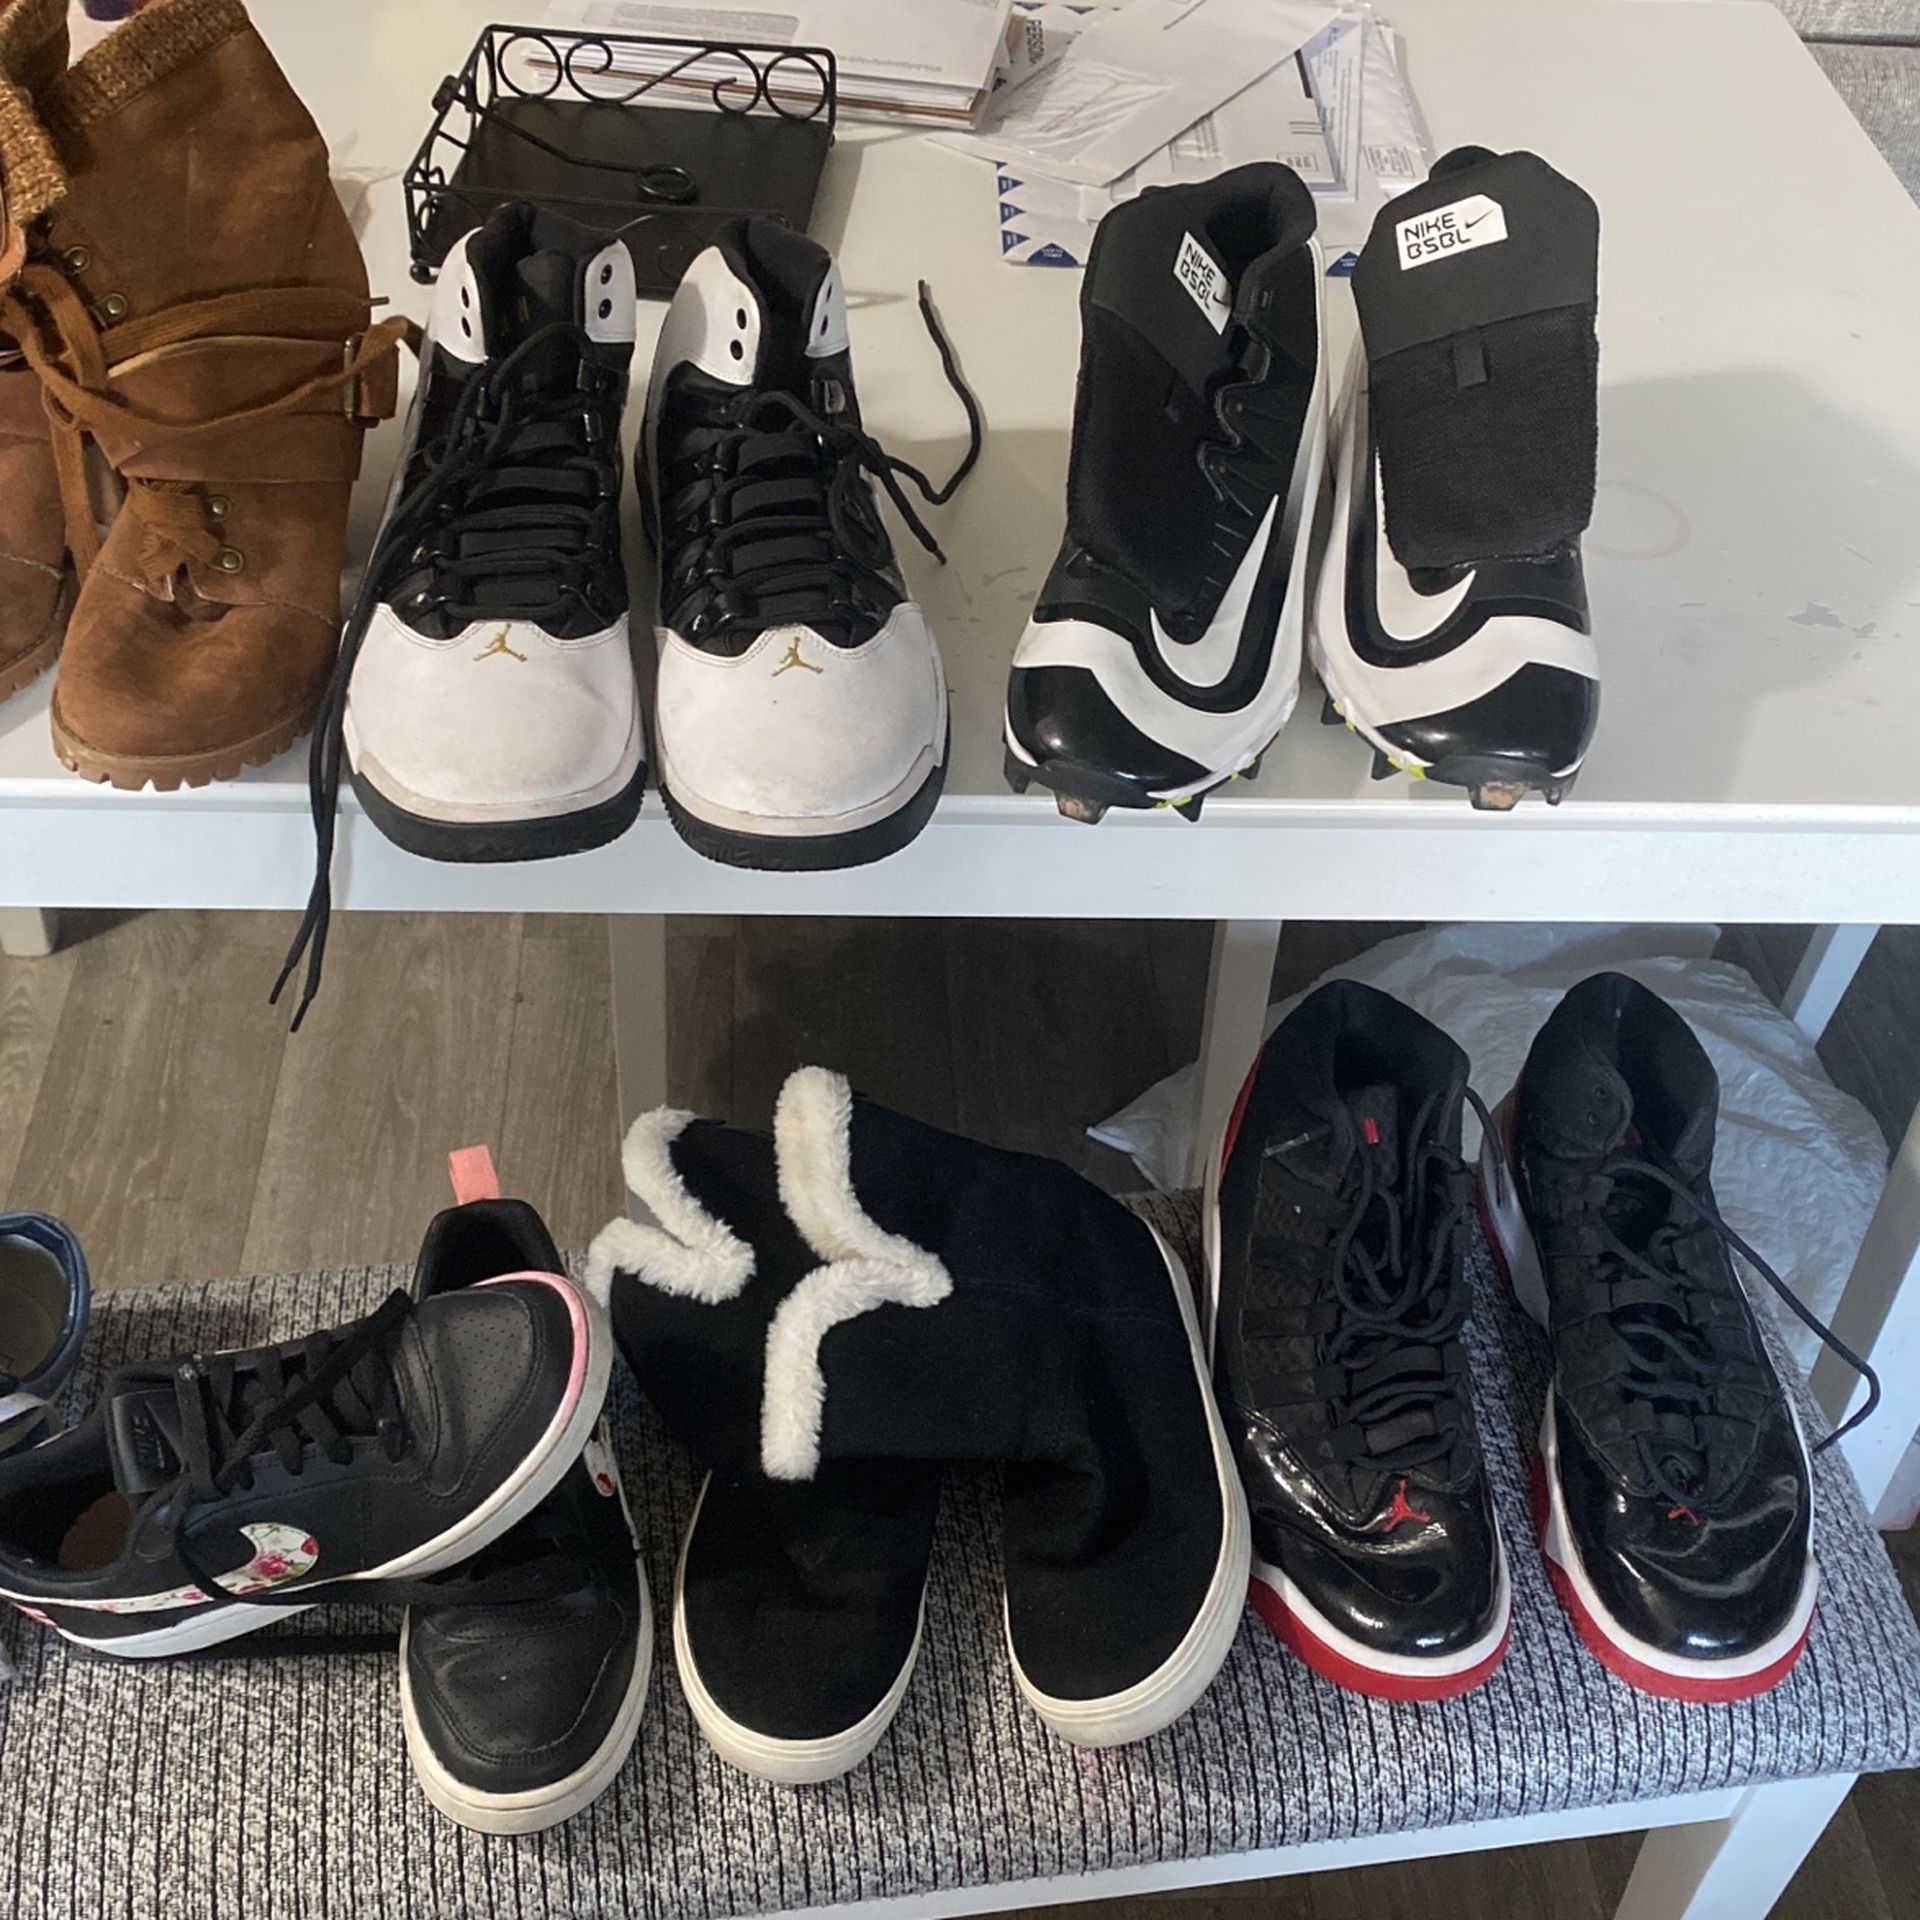 Shoe bundle, 9 Pairs